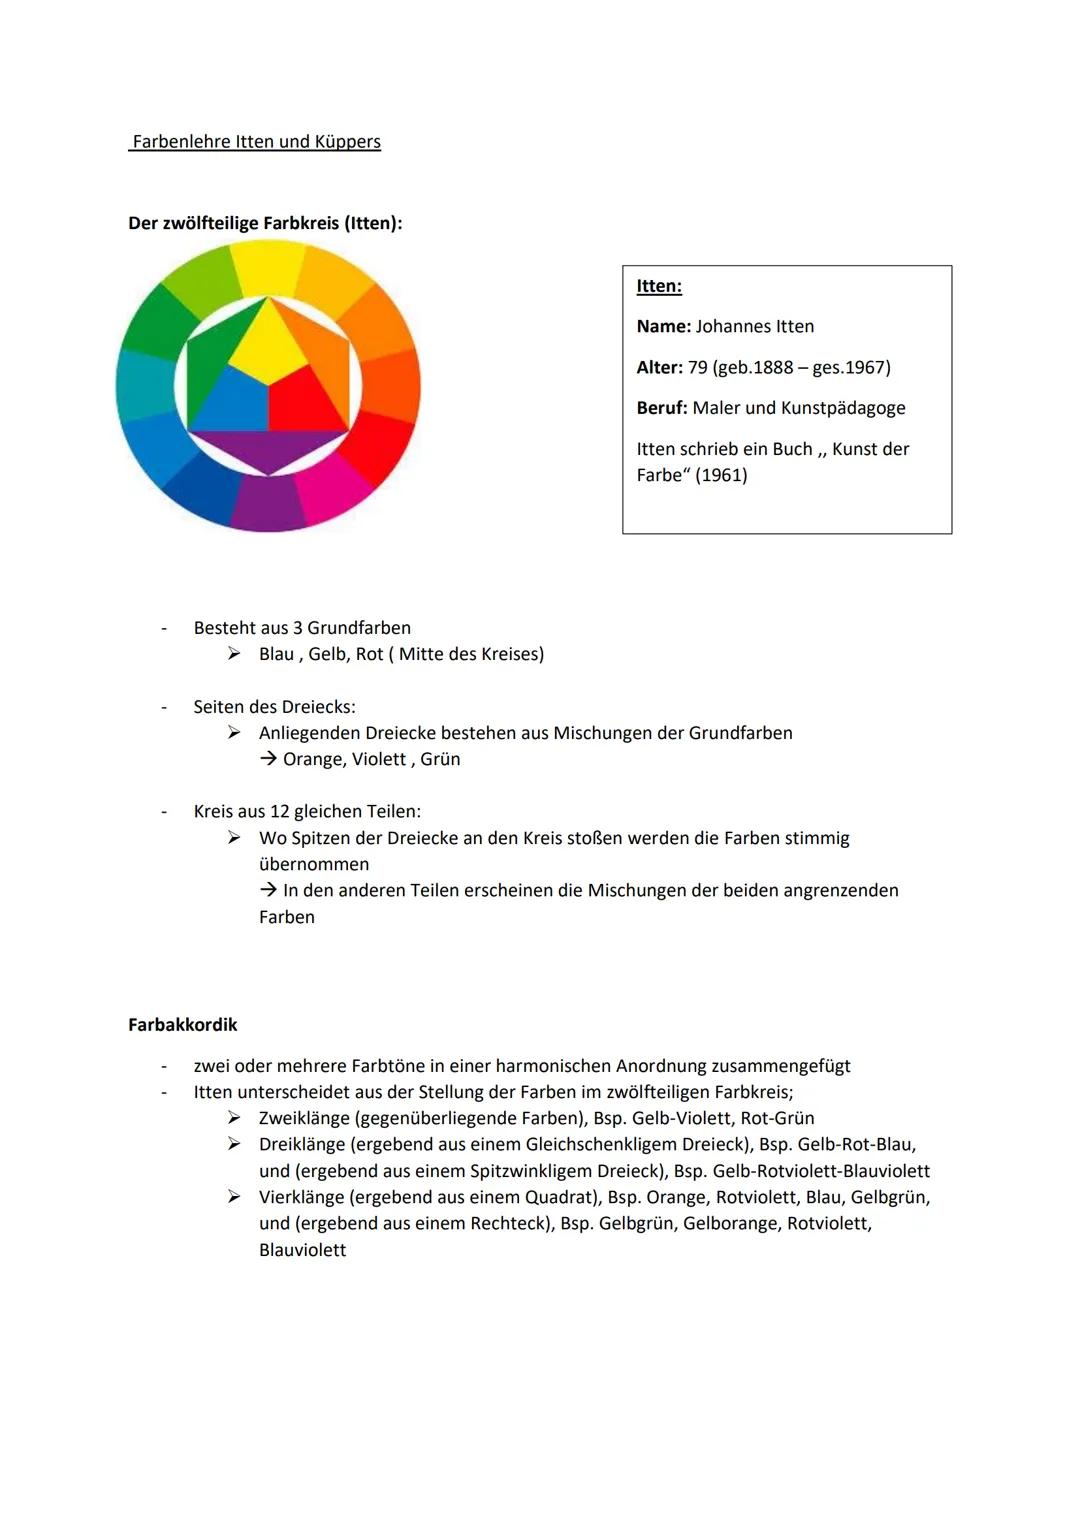 Farbenlehre Itten und Küppers
Der zwölfteilige Farbkreis (Itten):
Besteht aus 3 Grundfarben
➤ Blau, Gelb, Rot (Mitte des Kreises)
Seiten des